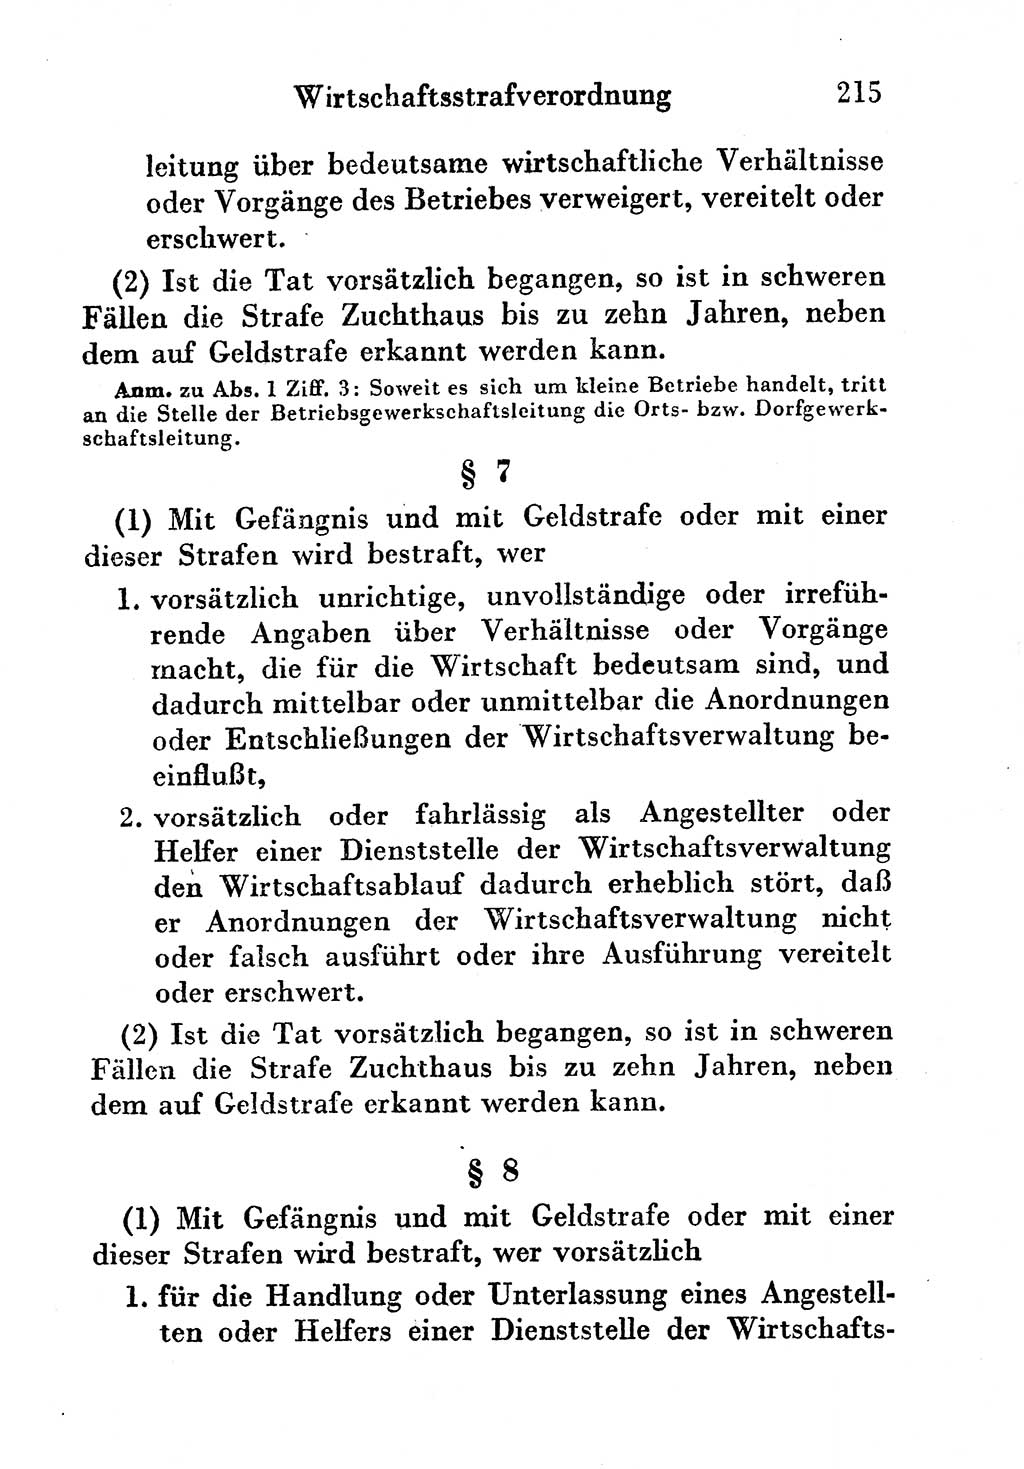 Strafgesetzbuch (StGB) und andere Strafgesetze [Deutsche Demokratische Republik (DDR)] 1956, Seite 215 (StGB Strafges. DDR 1956, S. 215)